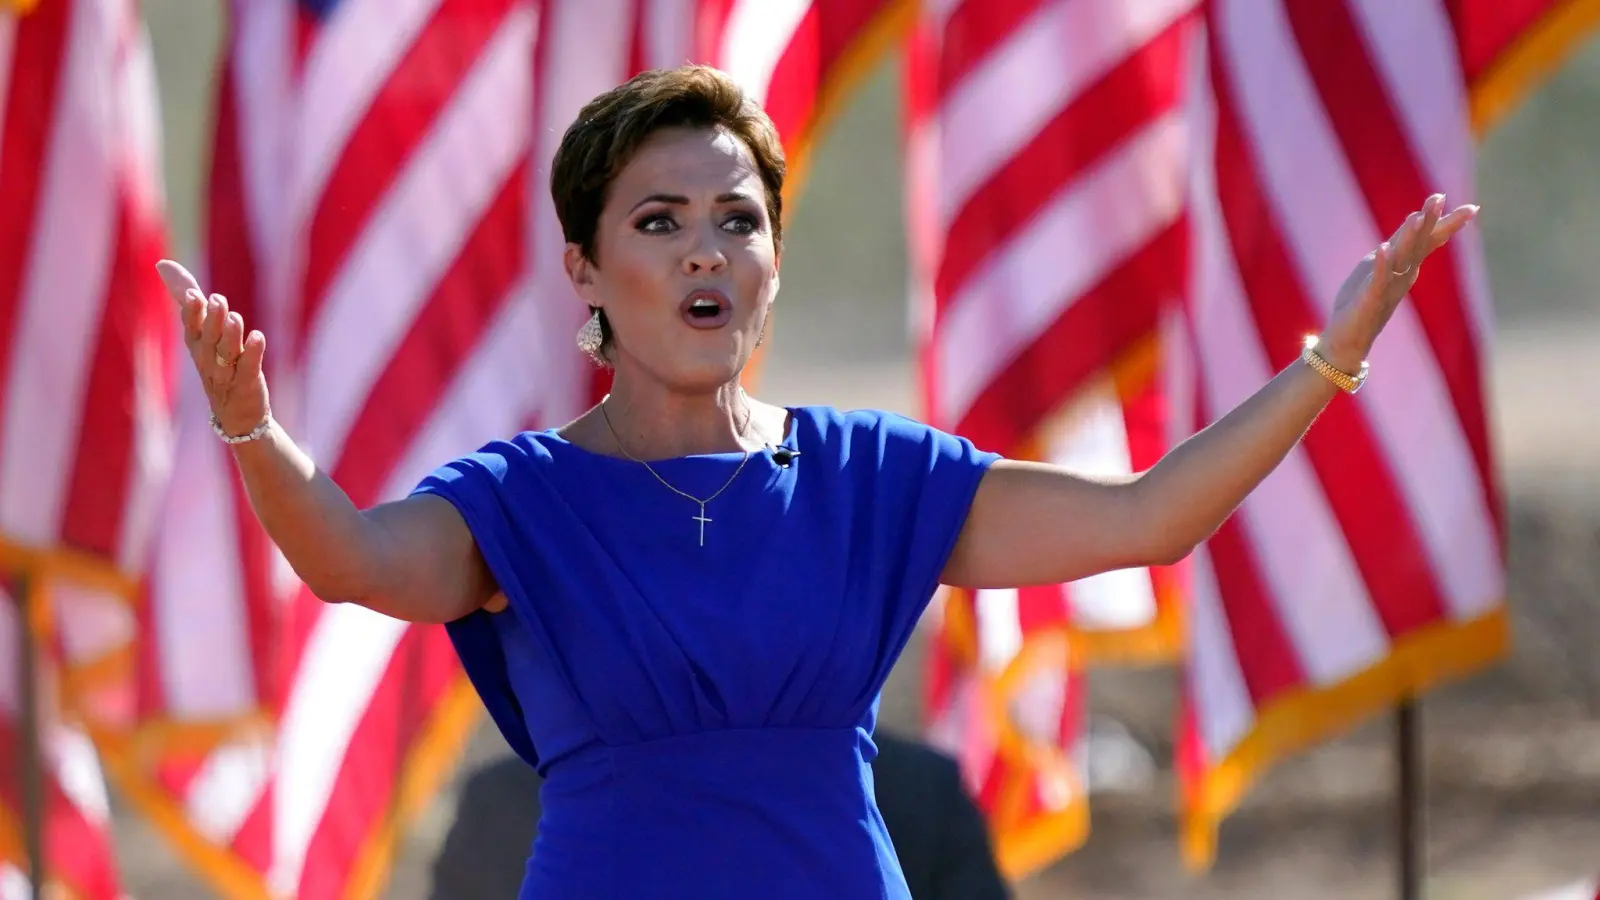 Die Republikanerin Kari Lake, die sich um das Gouverneursamt in Arizona bewirbt, wird in ihrem Wahlkampf von Ex-US-Präsident Donald Trump unterstützt. (Foto: Matt York/AP/dpa)